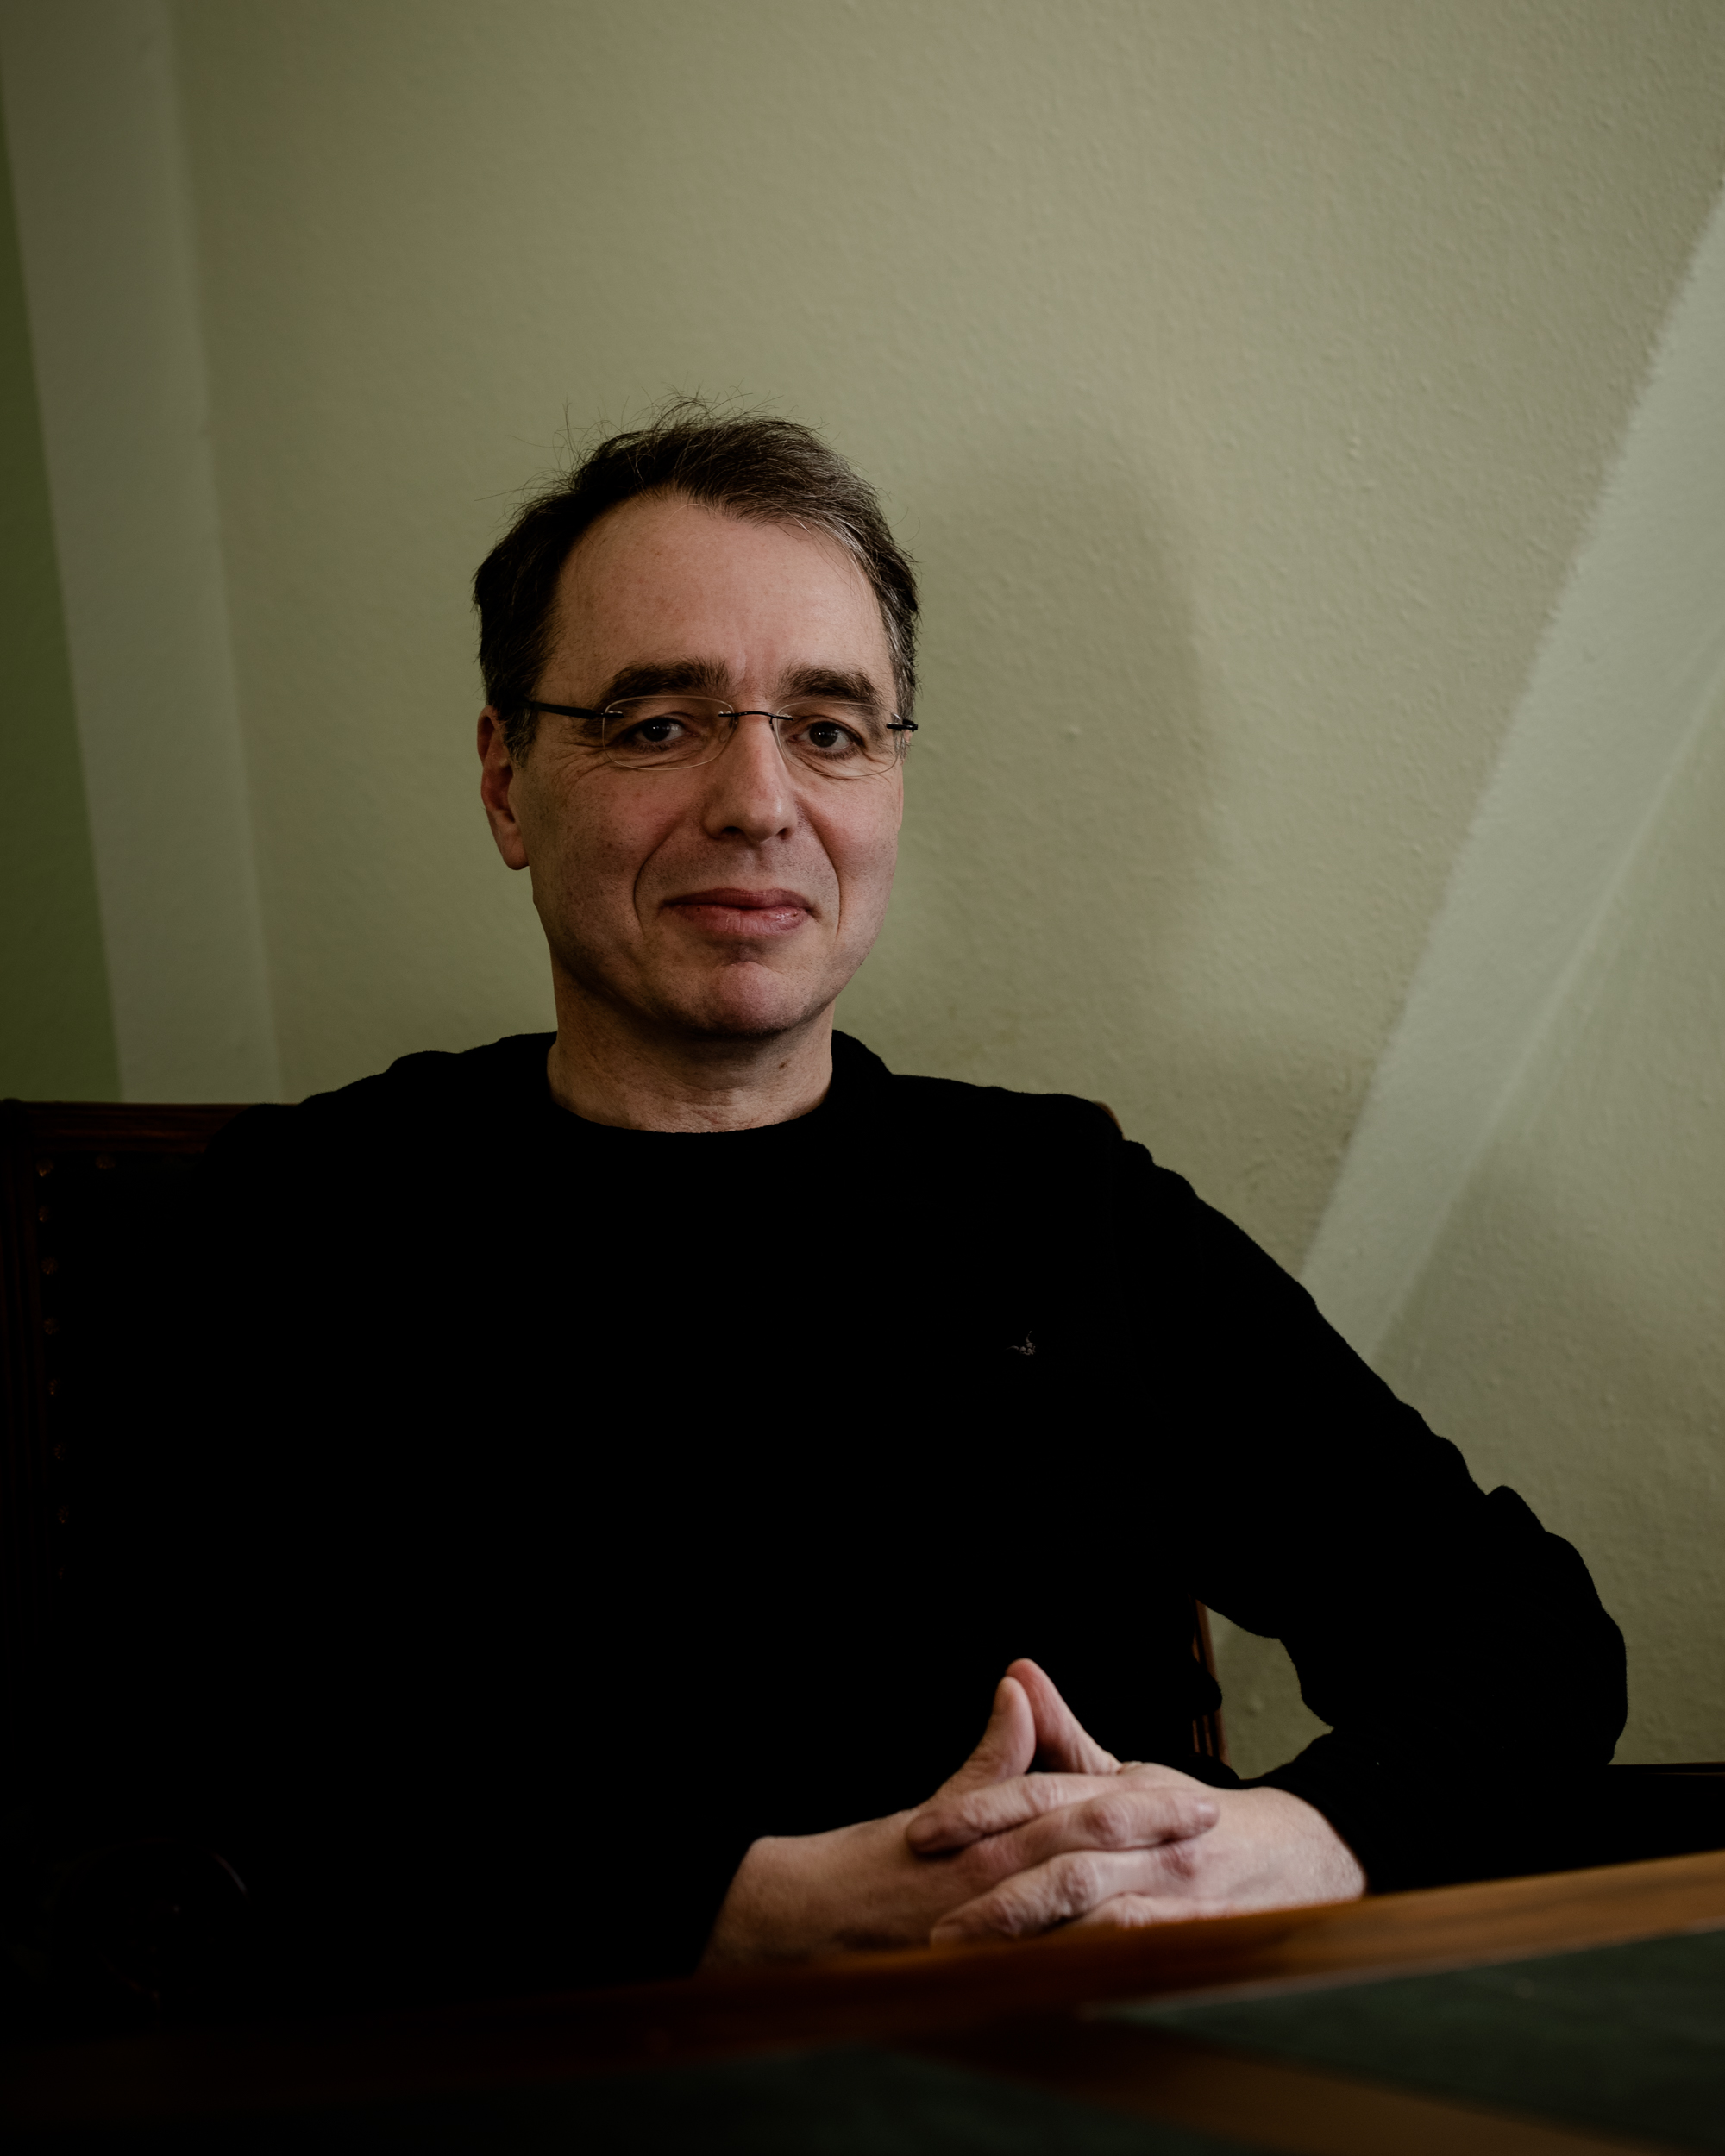 Bestseller Autor David Safier in seinem Arbeitszimmer in Bremen